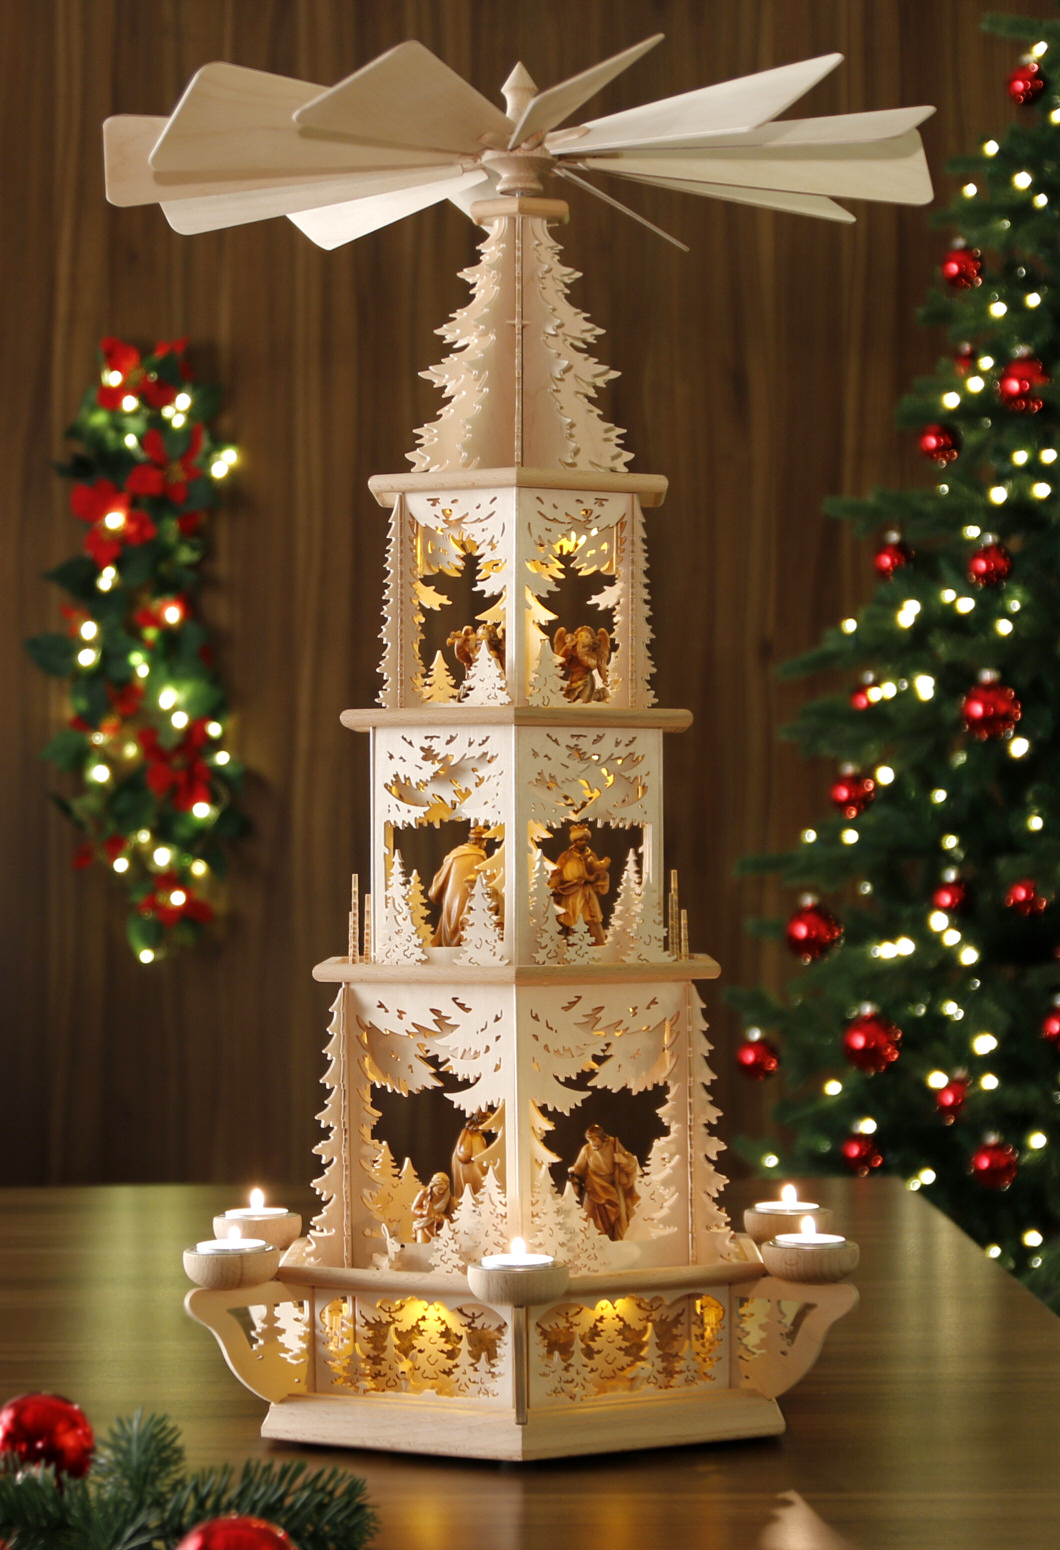 Tilgner-Weihnachtspyramide Erzgebirge innenbeleuchtet 77cm Figuren Kerze+Teeli. 